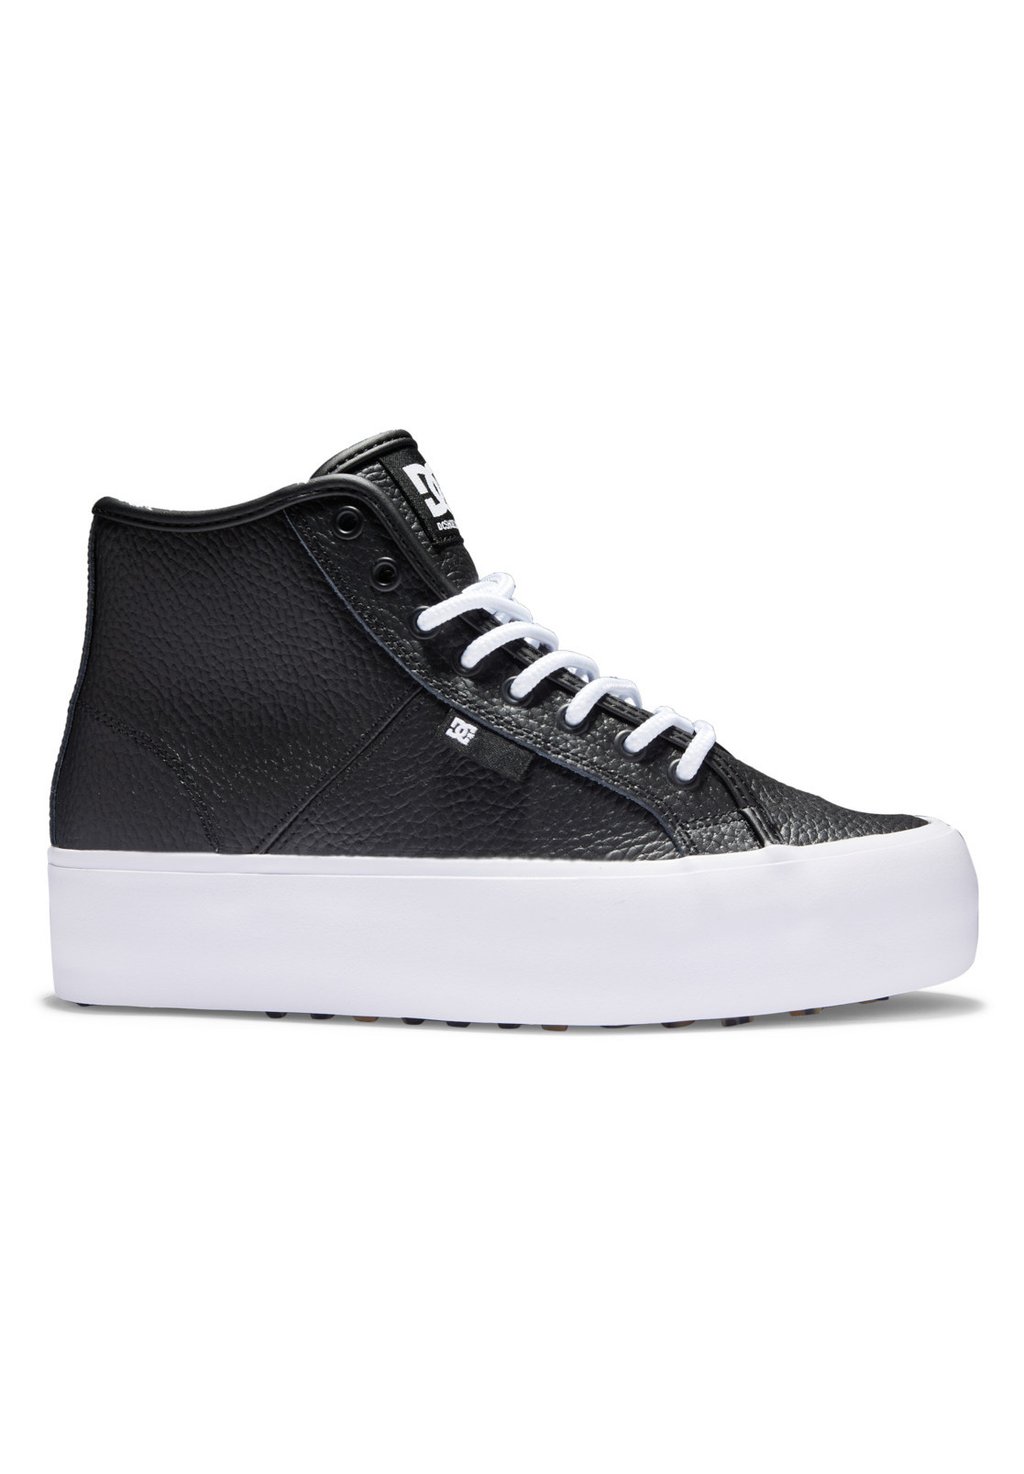 Высокие кроссовки DC Shoes MANUAL, цвет black white кроссовки dc shoes manual unisex black gum